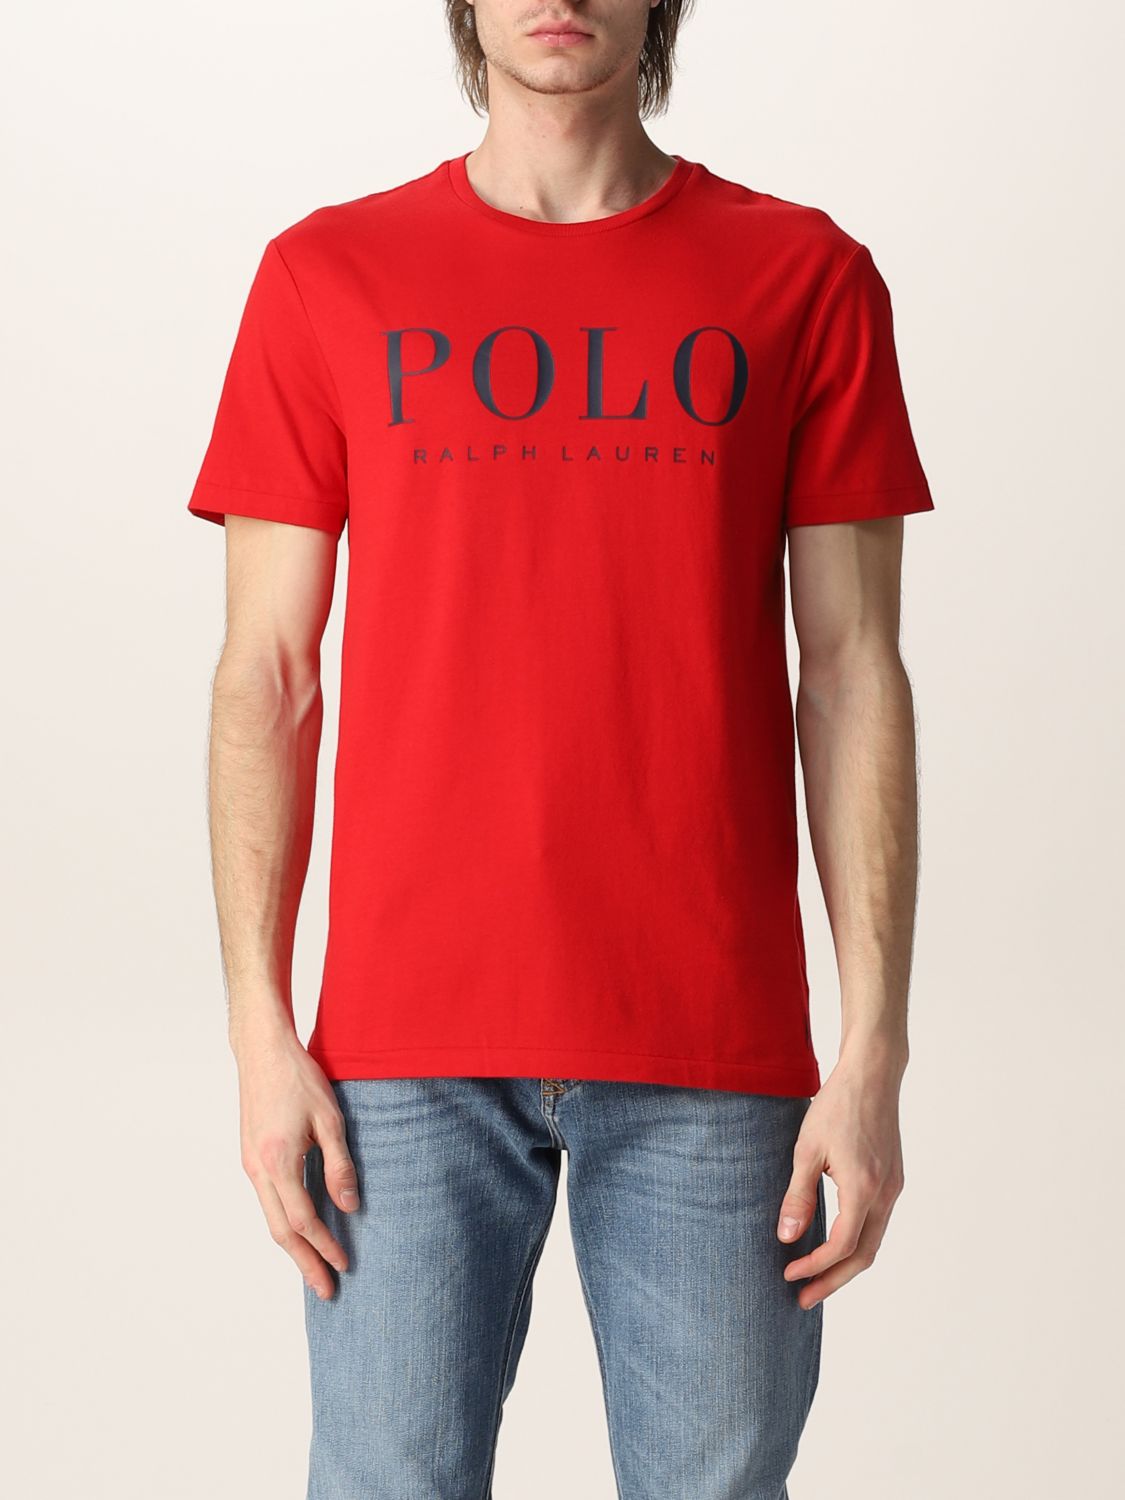 ポロラルフローレン(POLO RALPH LAUREN): Tシャツ メンズ - レッド | Tシャツ ポロラルフローレン 710860829